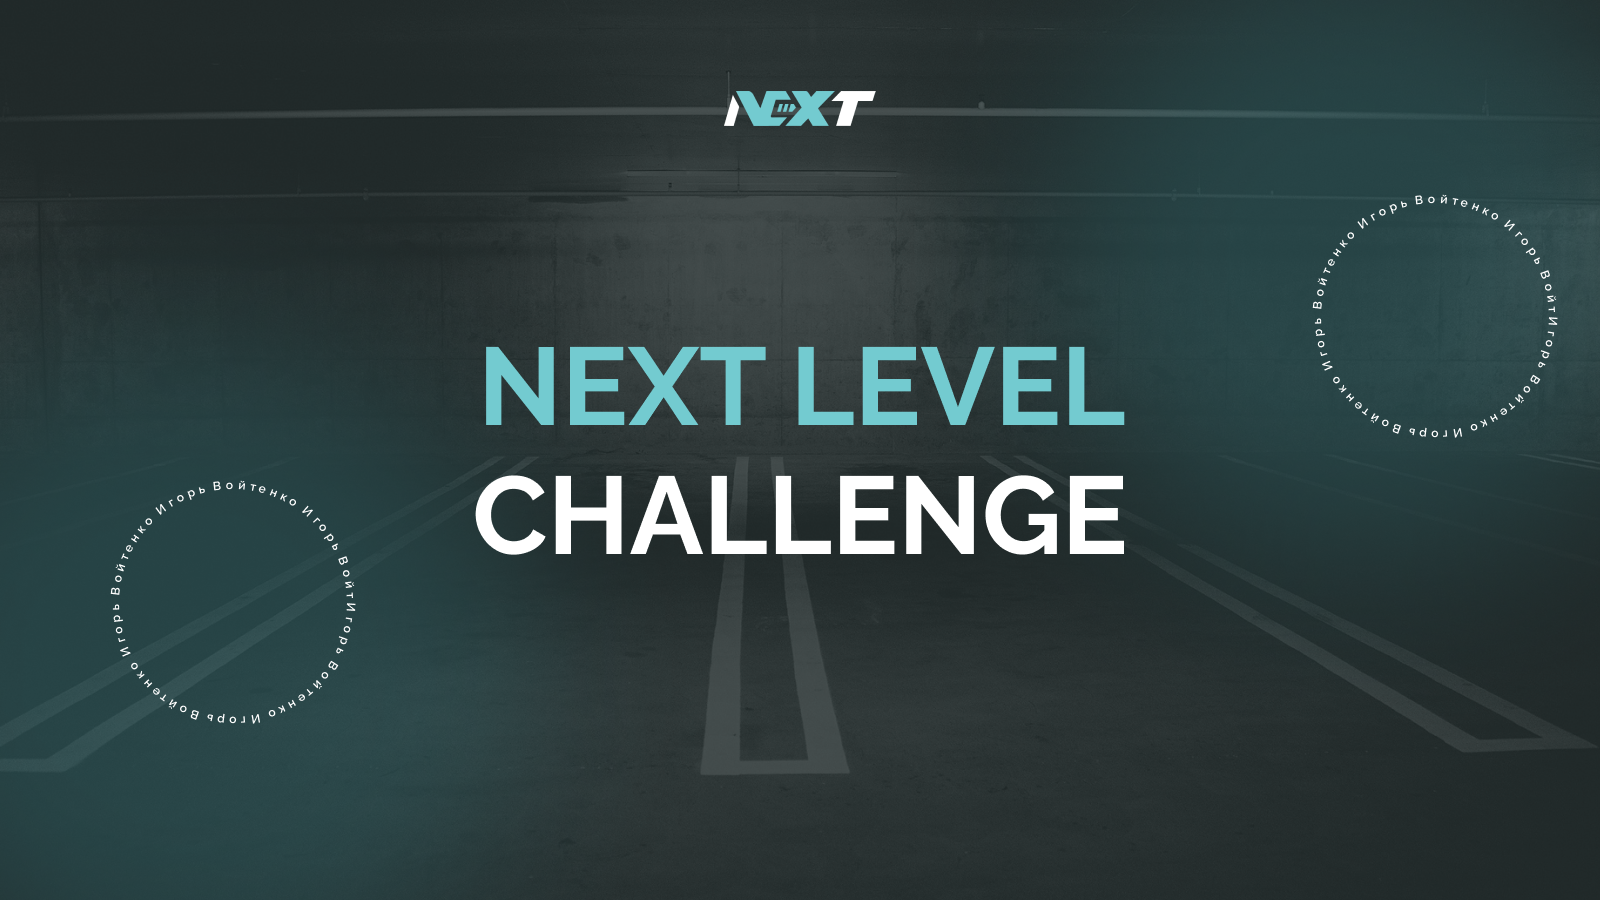 Некст левел. Next Level logo. AGL Challenge. Challenge level